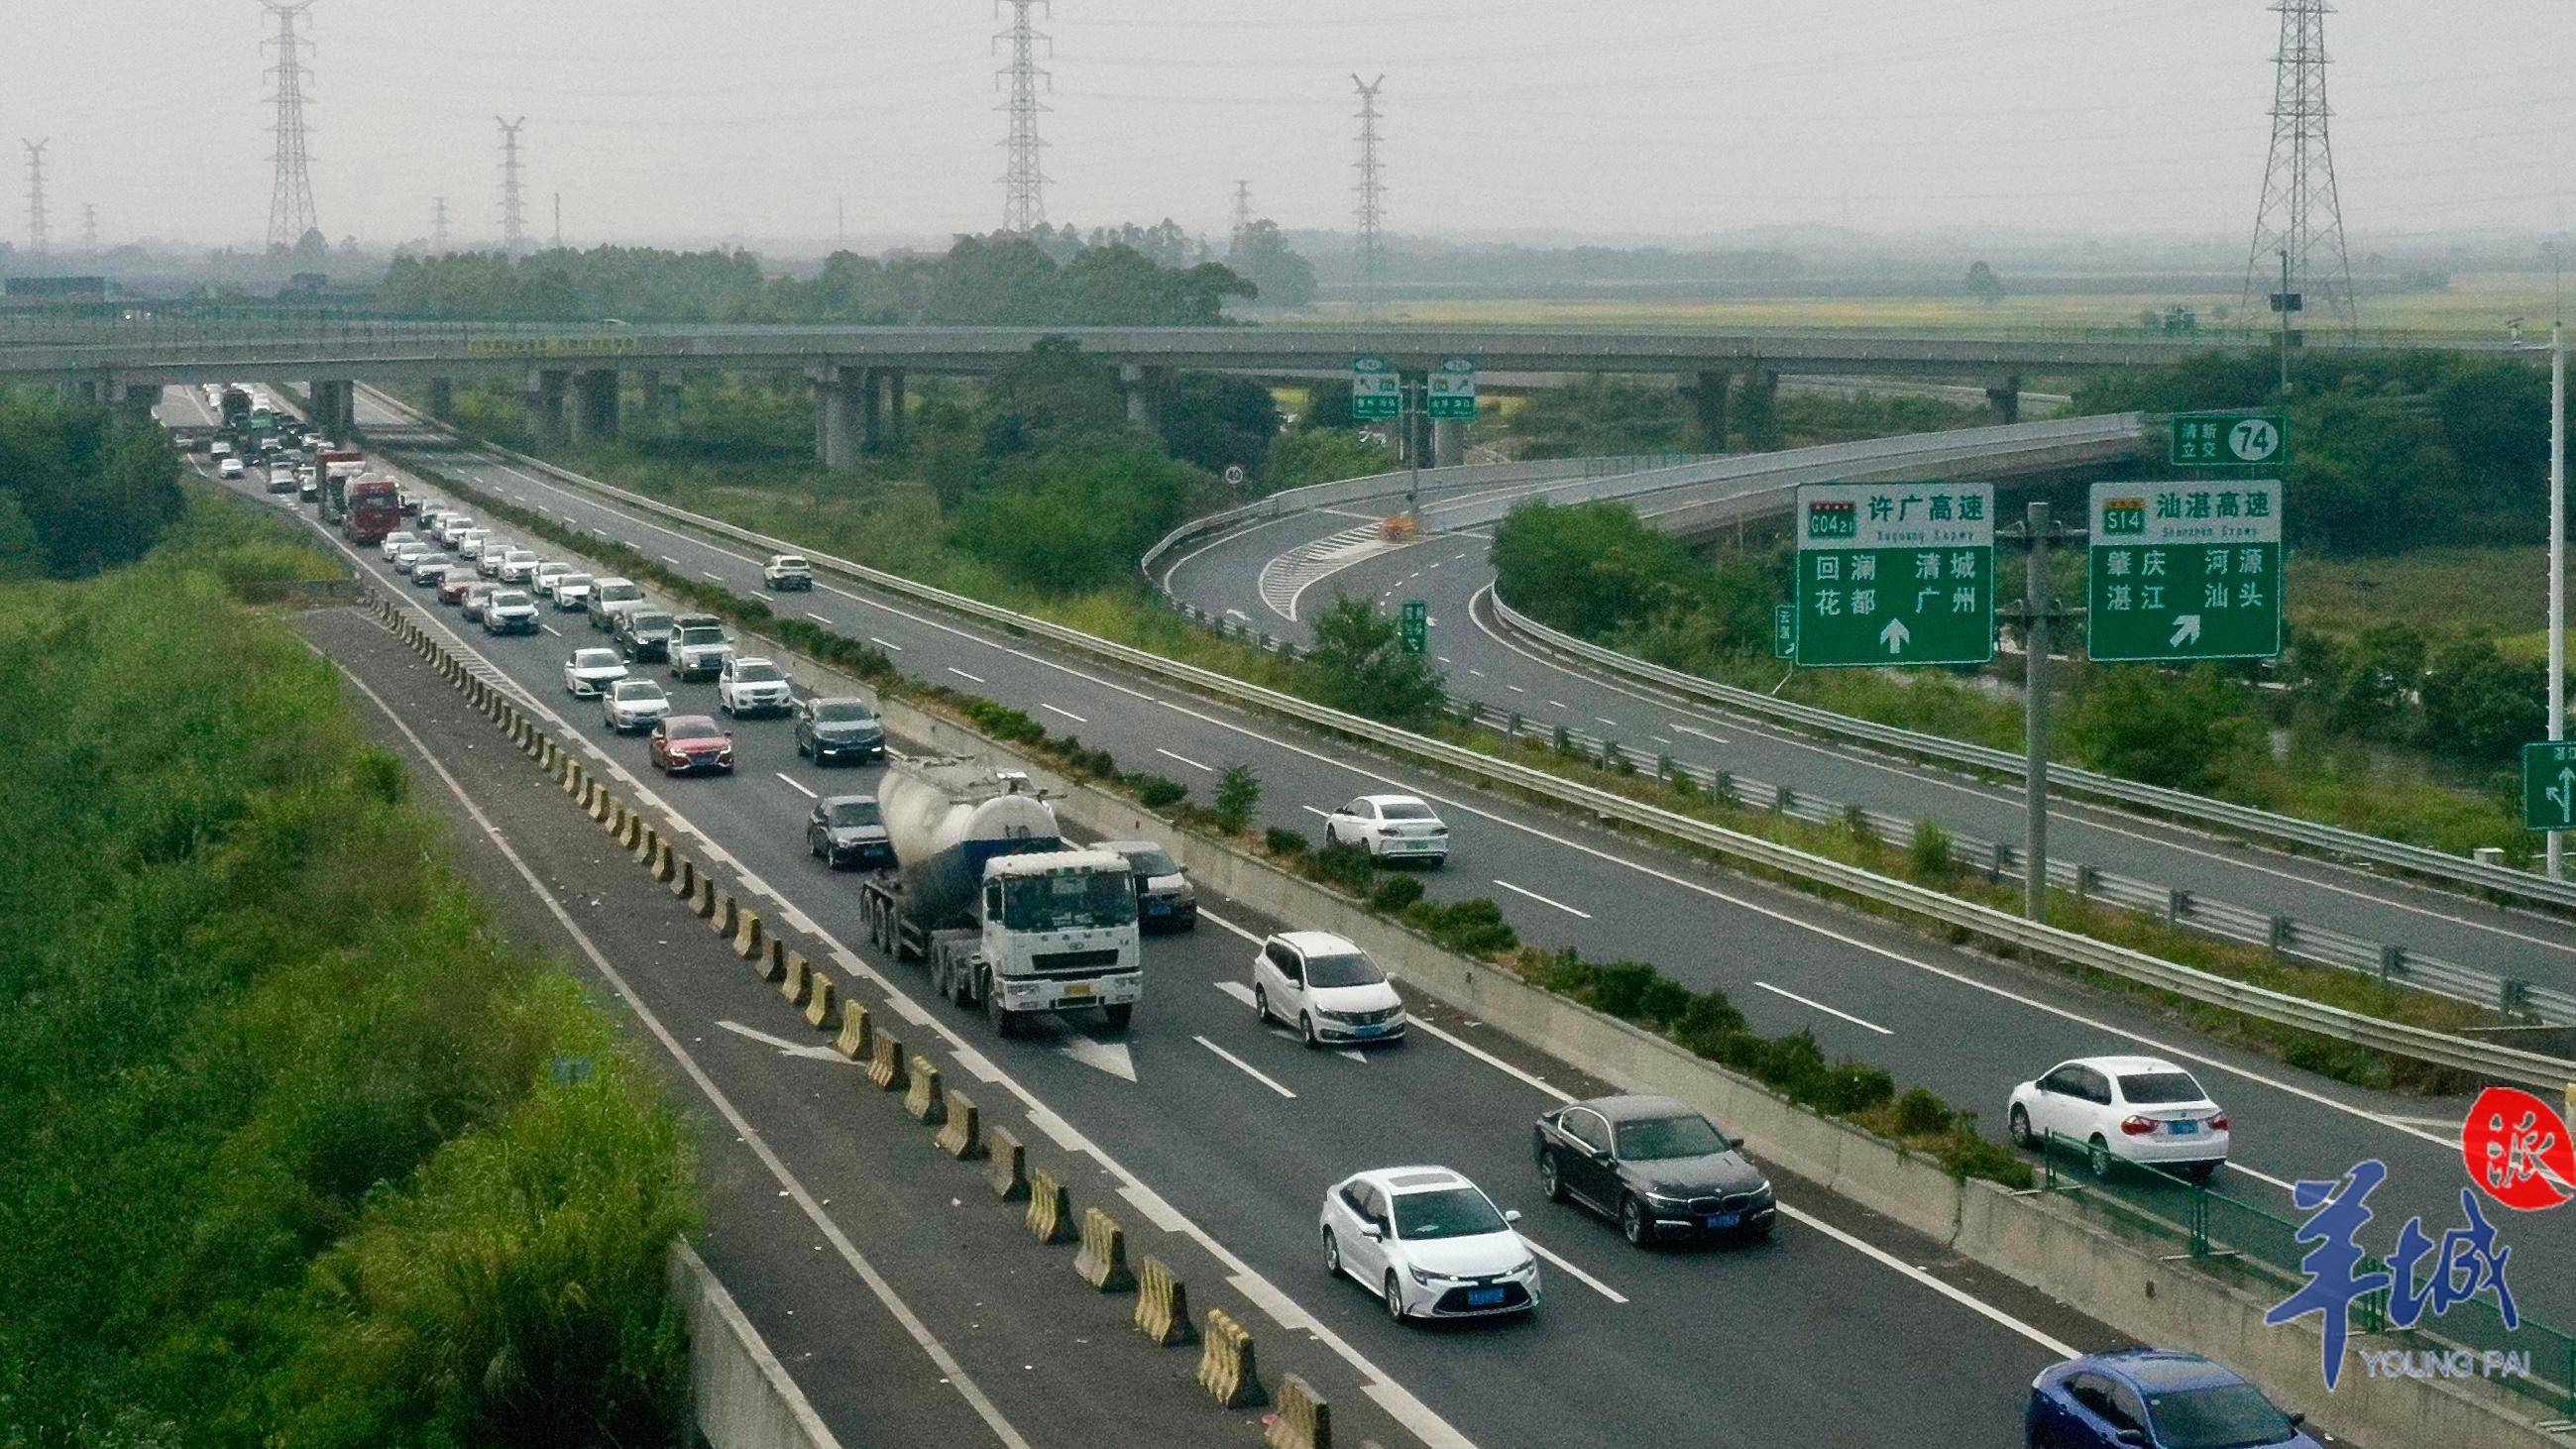 「图集」国庆假期第二日,许广高速清远段"车龙"超20公里